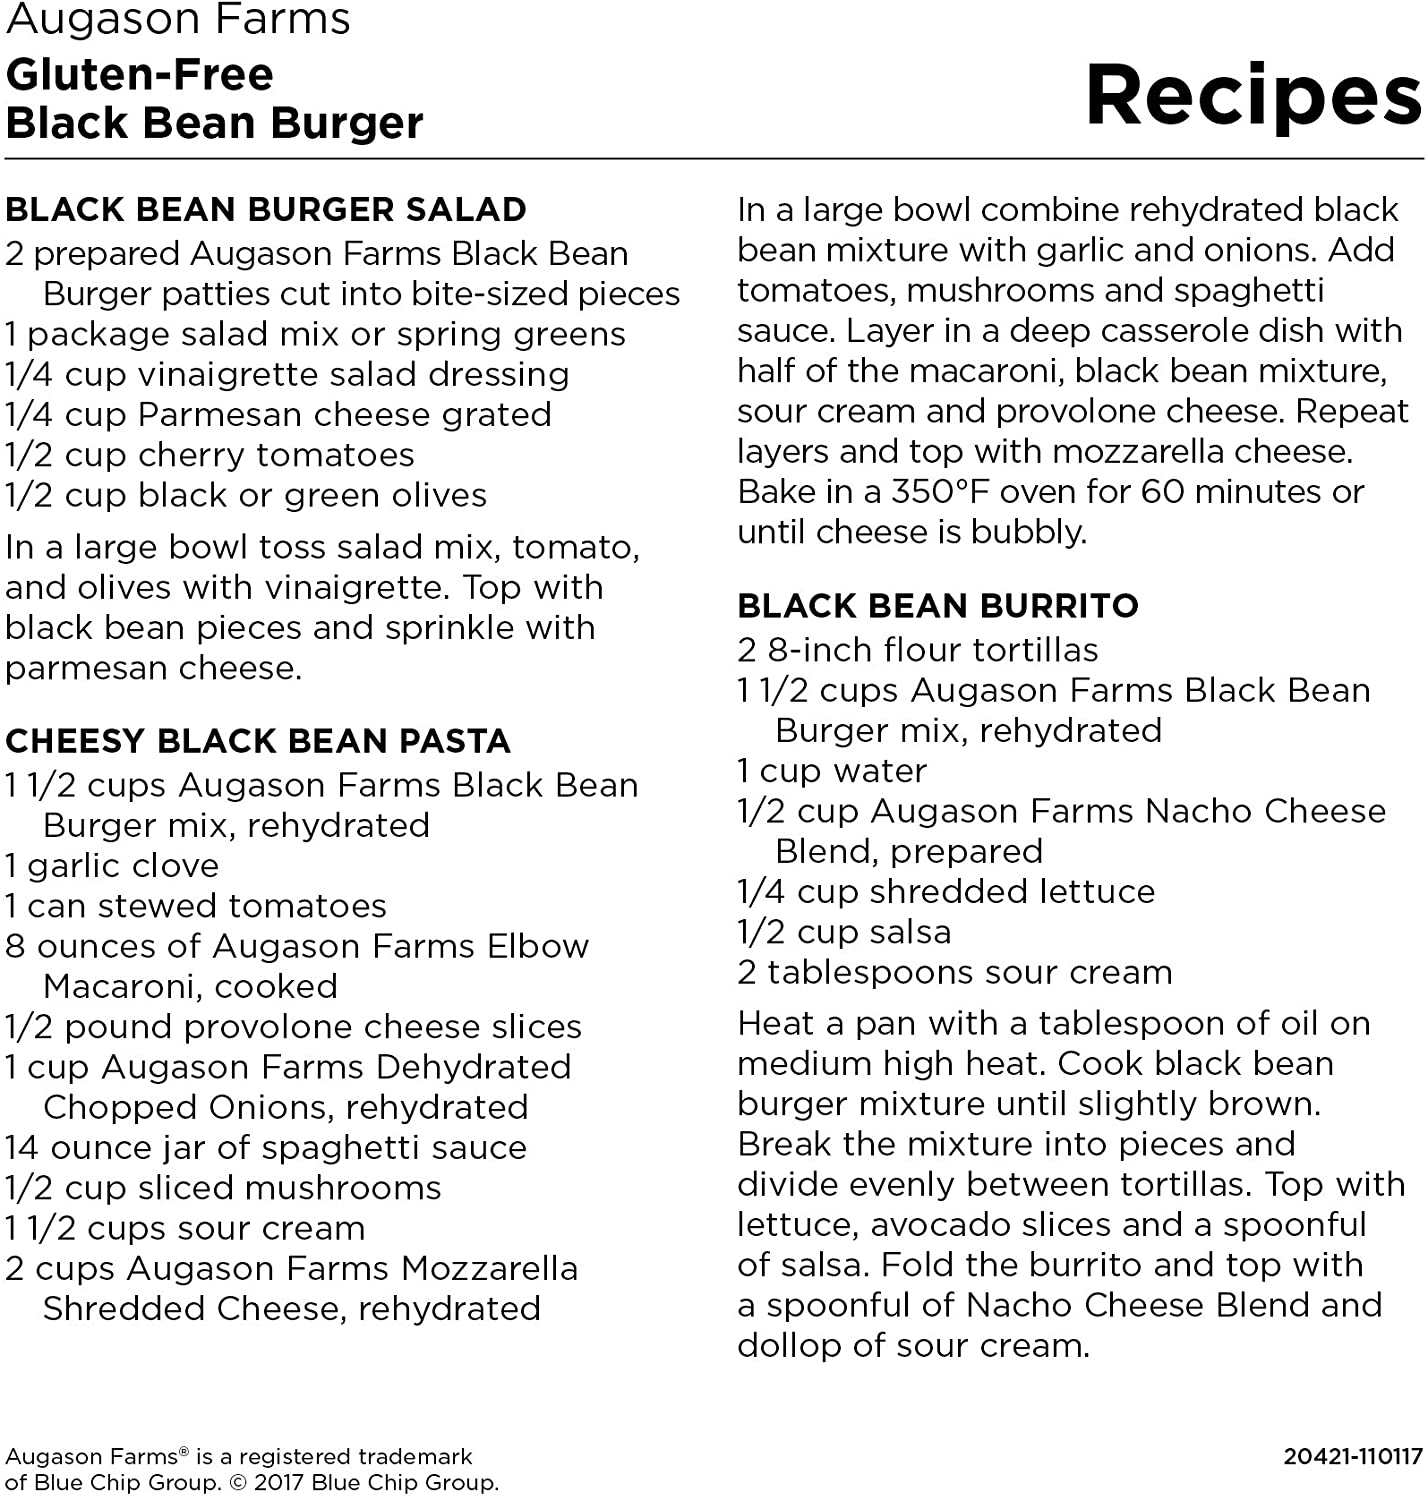 A recipe for gluten-free black bean burger using Augason Farms Black Bean Burger 4-Gallon Pail.